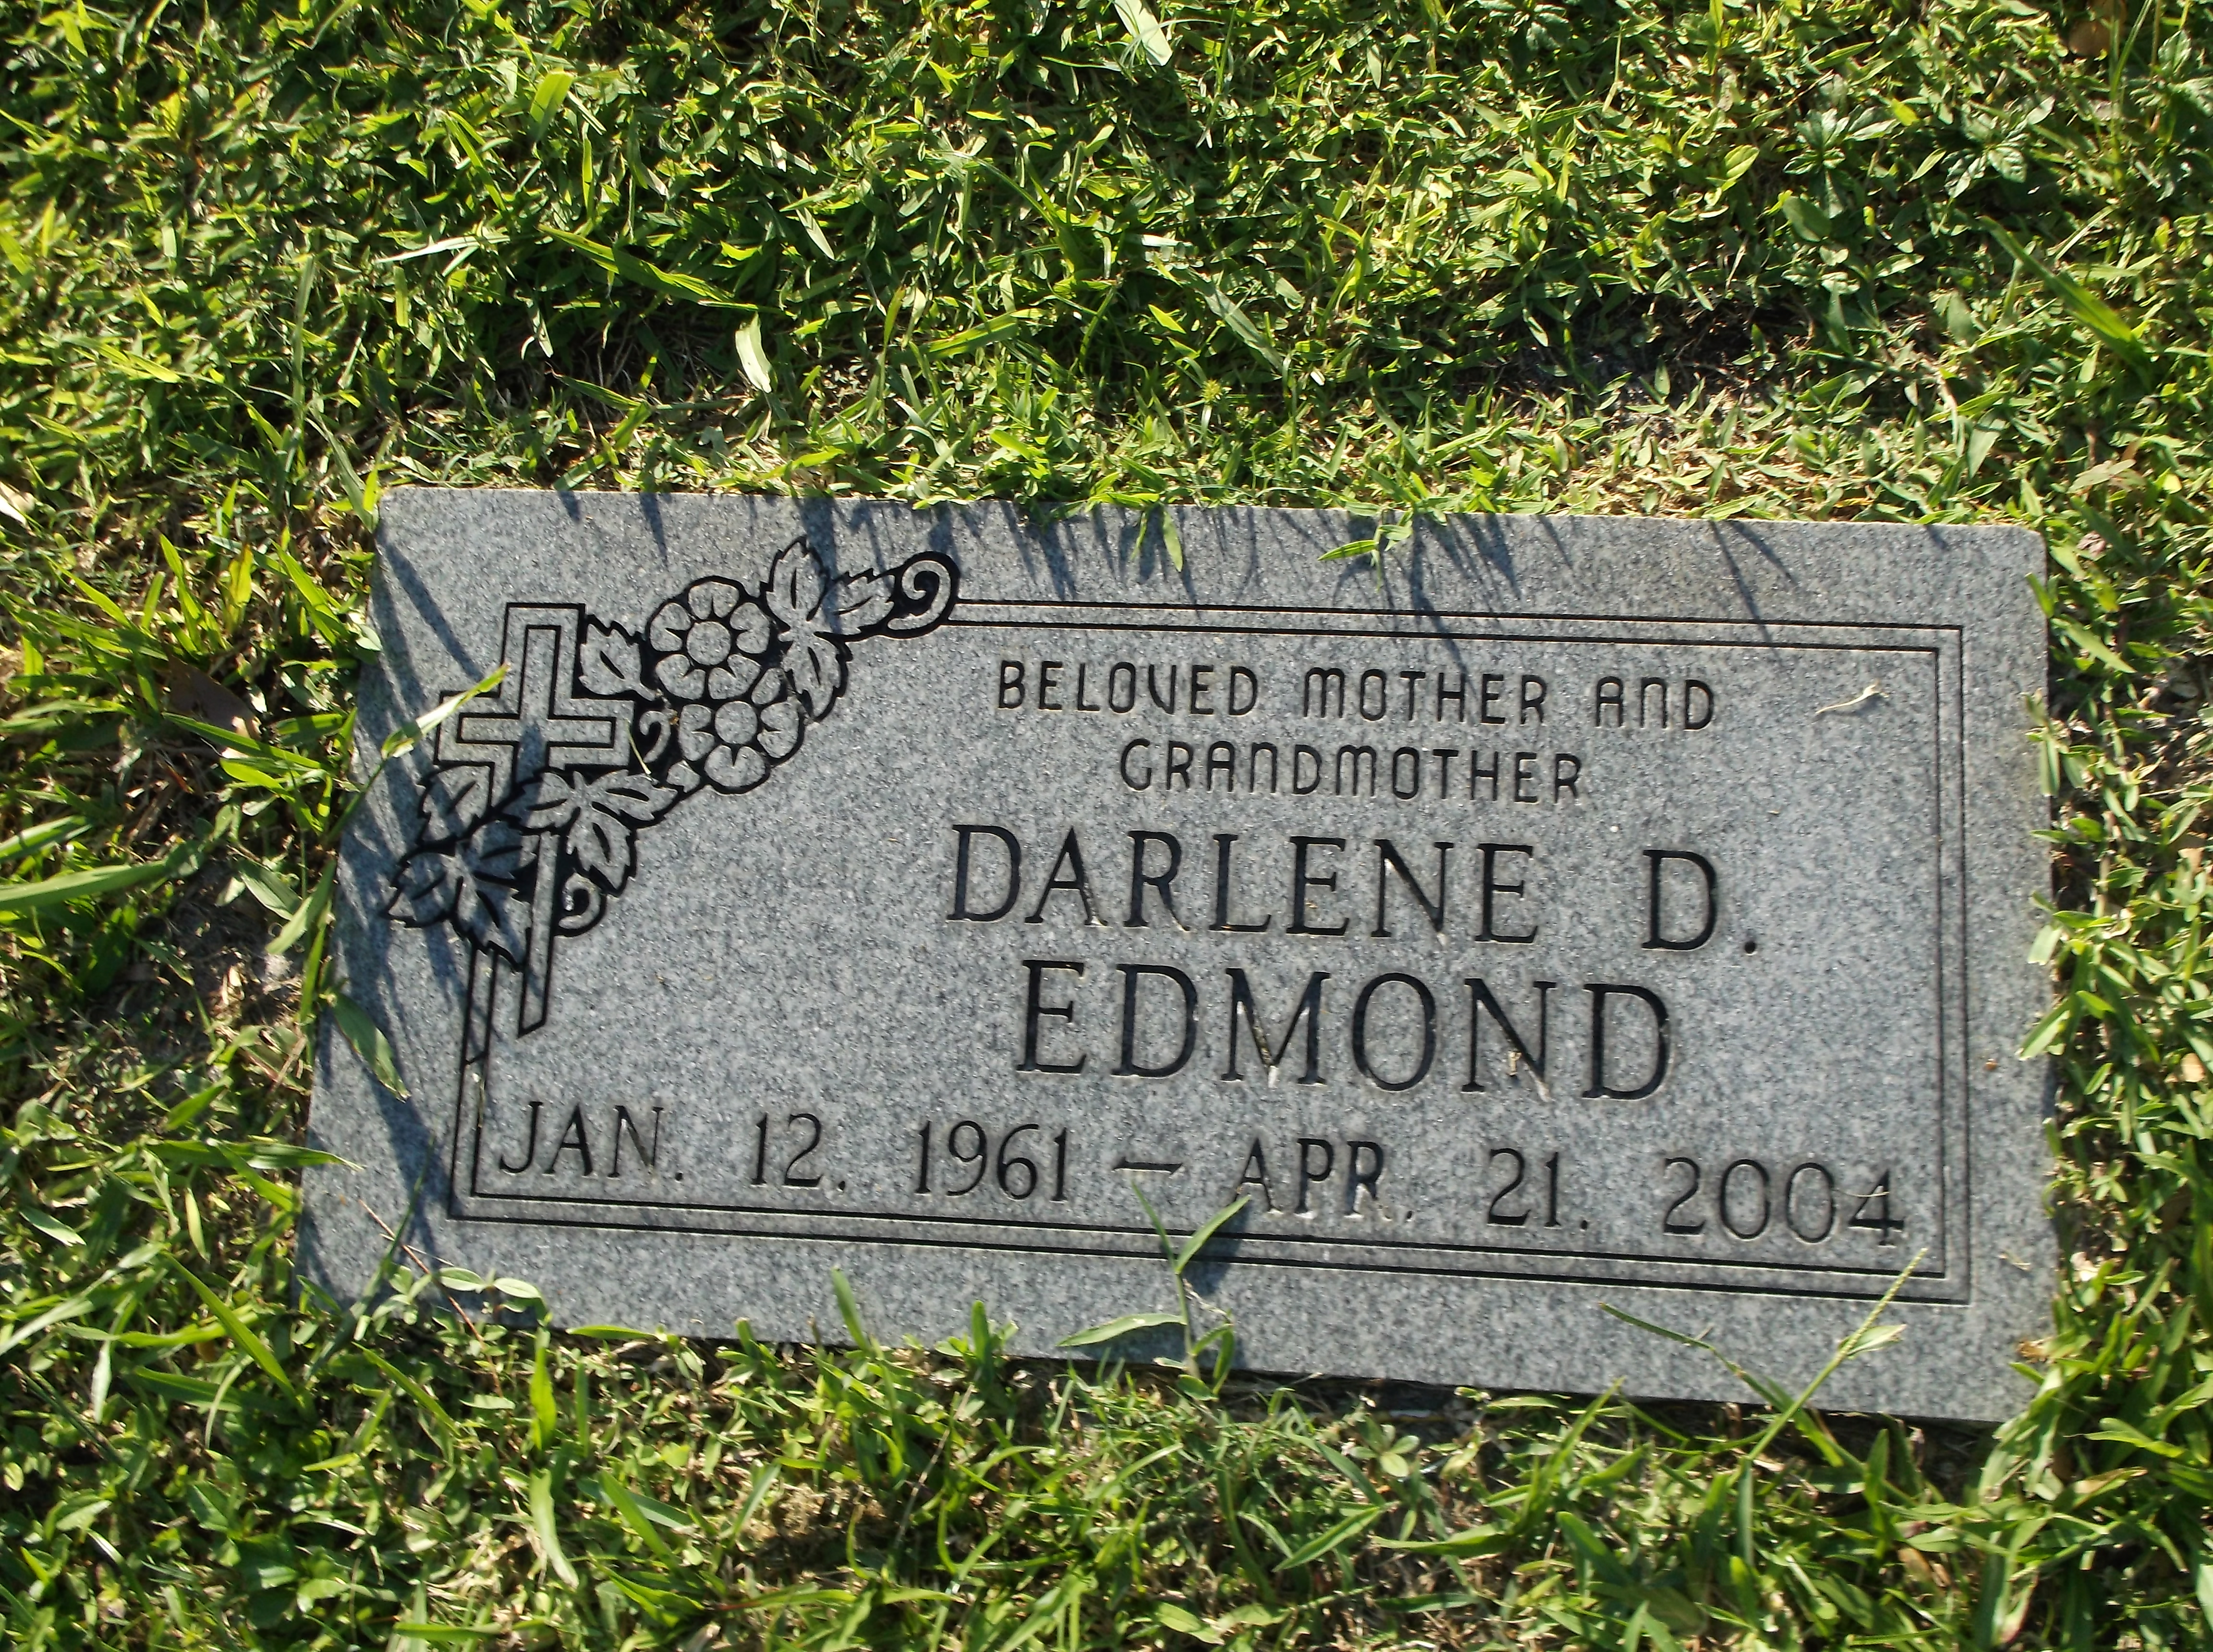 Darlene D Edmond